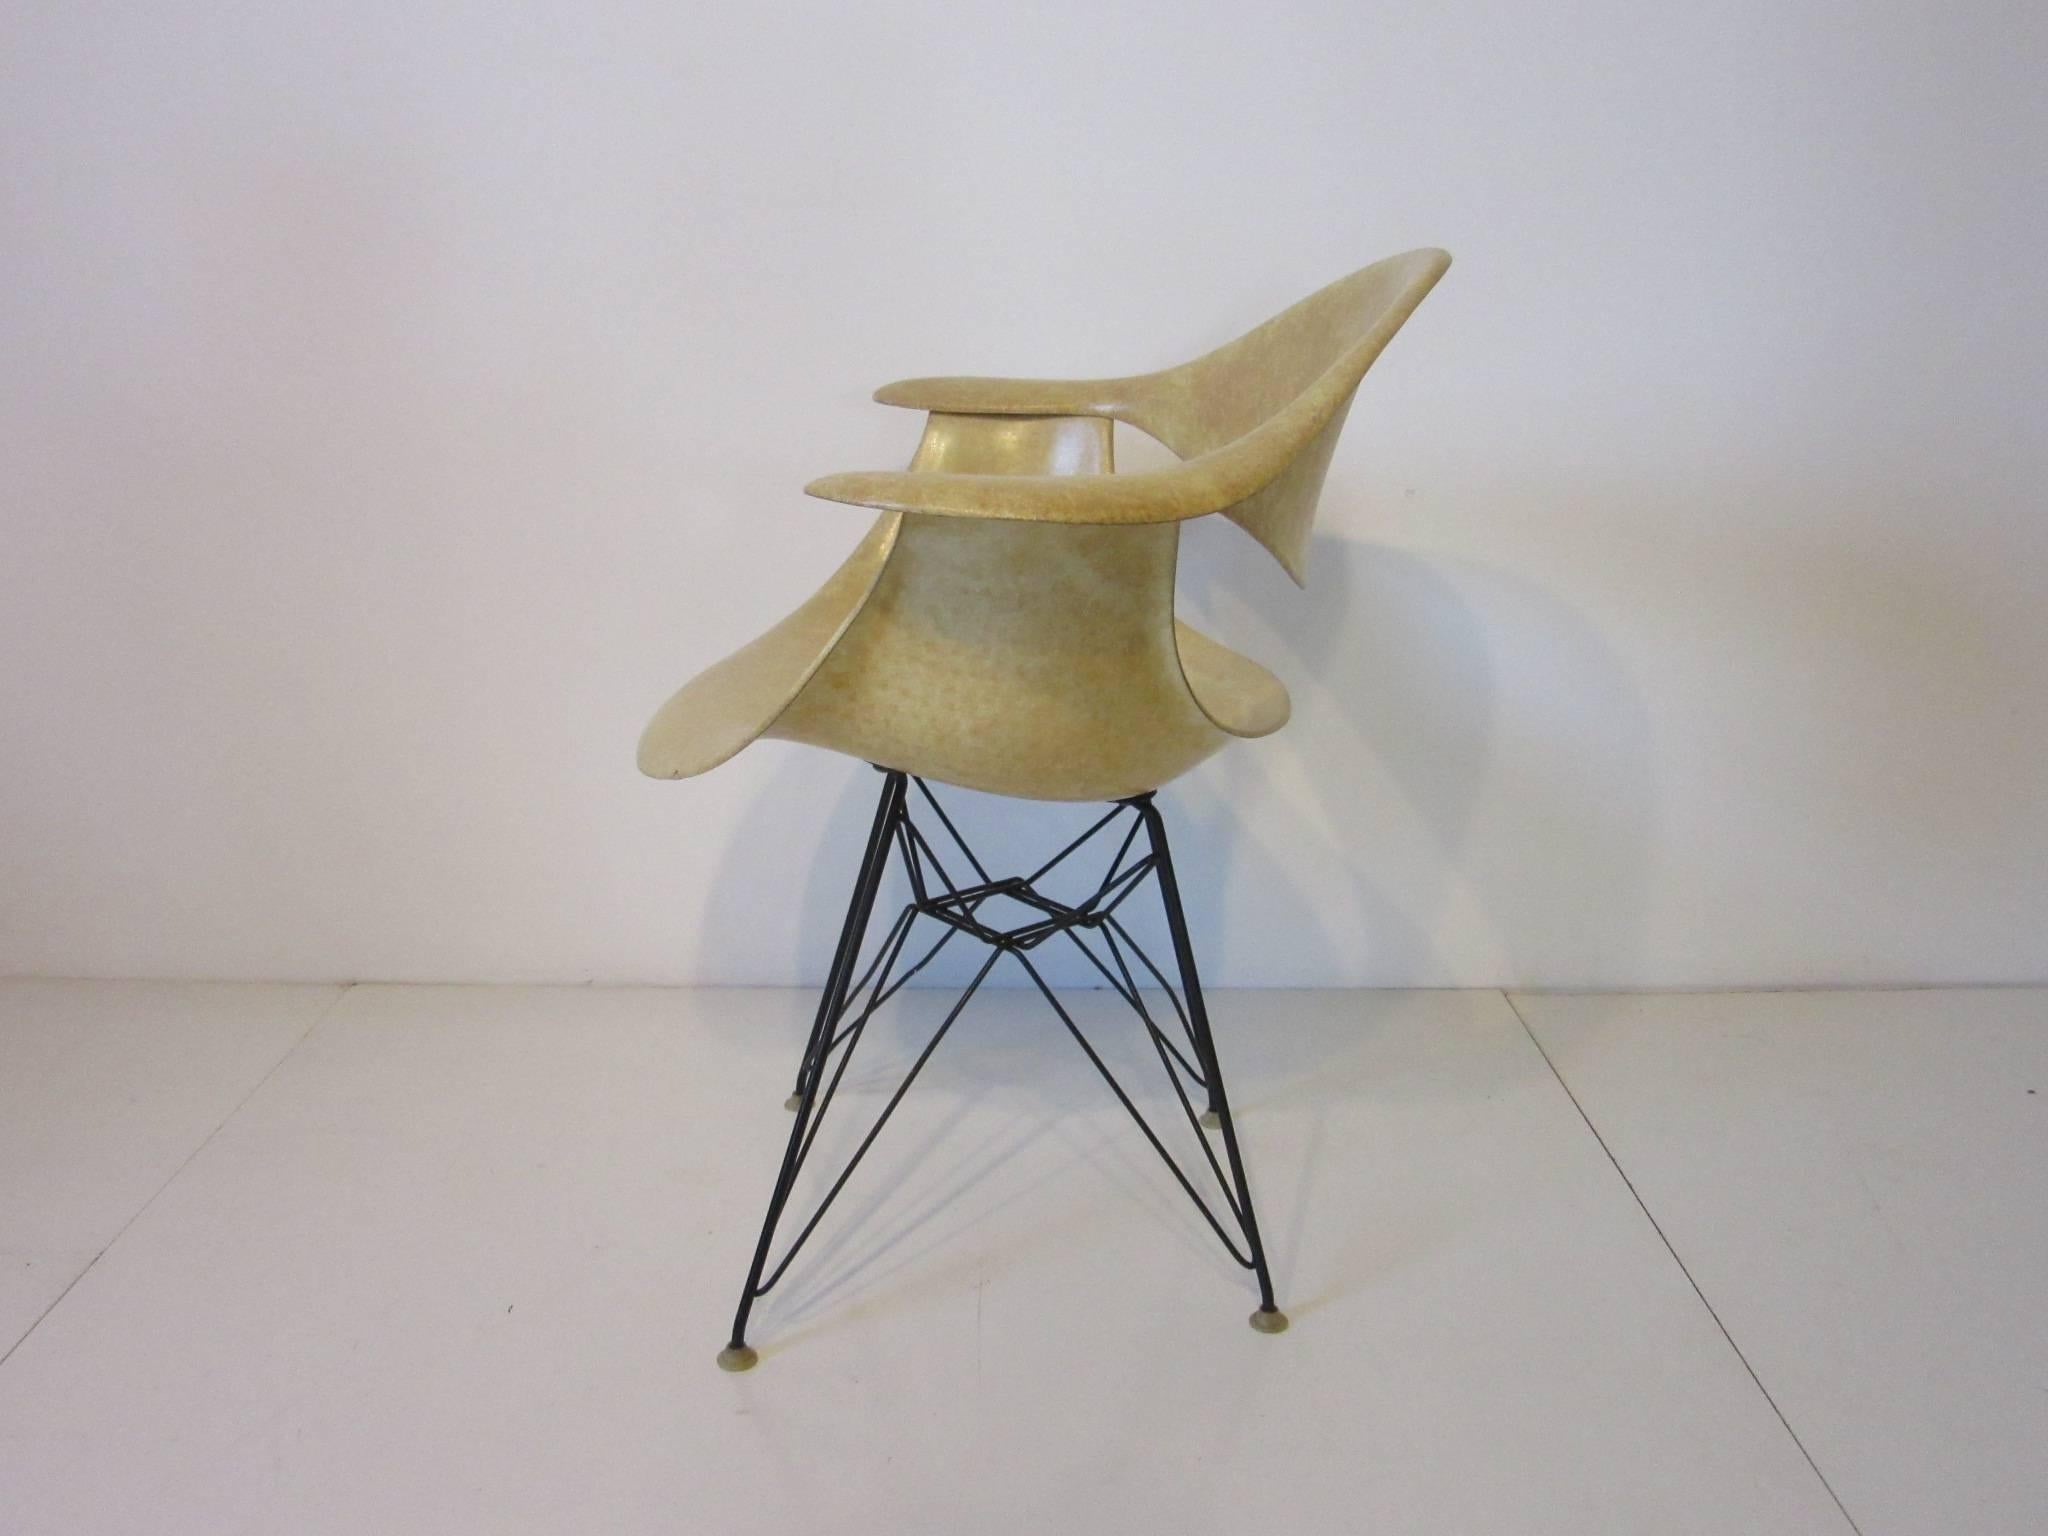 Ein früher Prototyp einer Fiberglas-Armschale oder eines DAF-Stuhls, entworfen von George Nelson. Dieser Stuhl stammt direkt von einem Ingenieur, der für die Firma Herman Miller in Zeeland, Michigan, gearbeitet hat, und wurde von einem Sammler